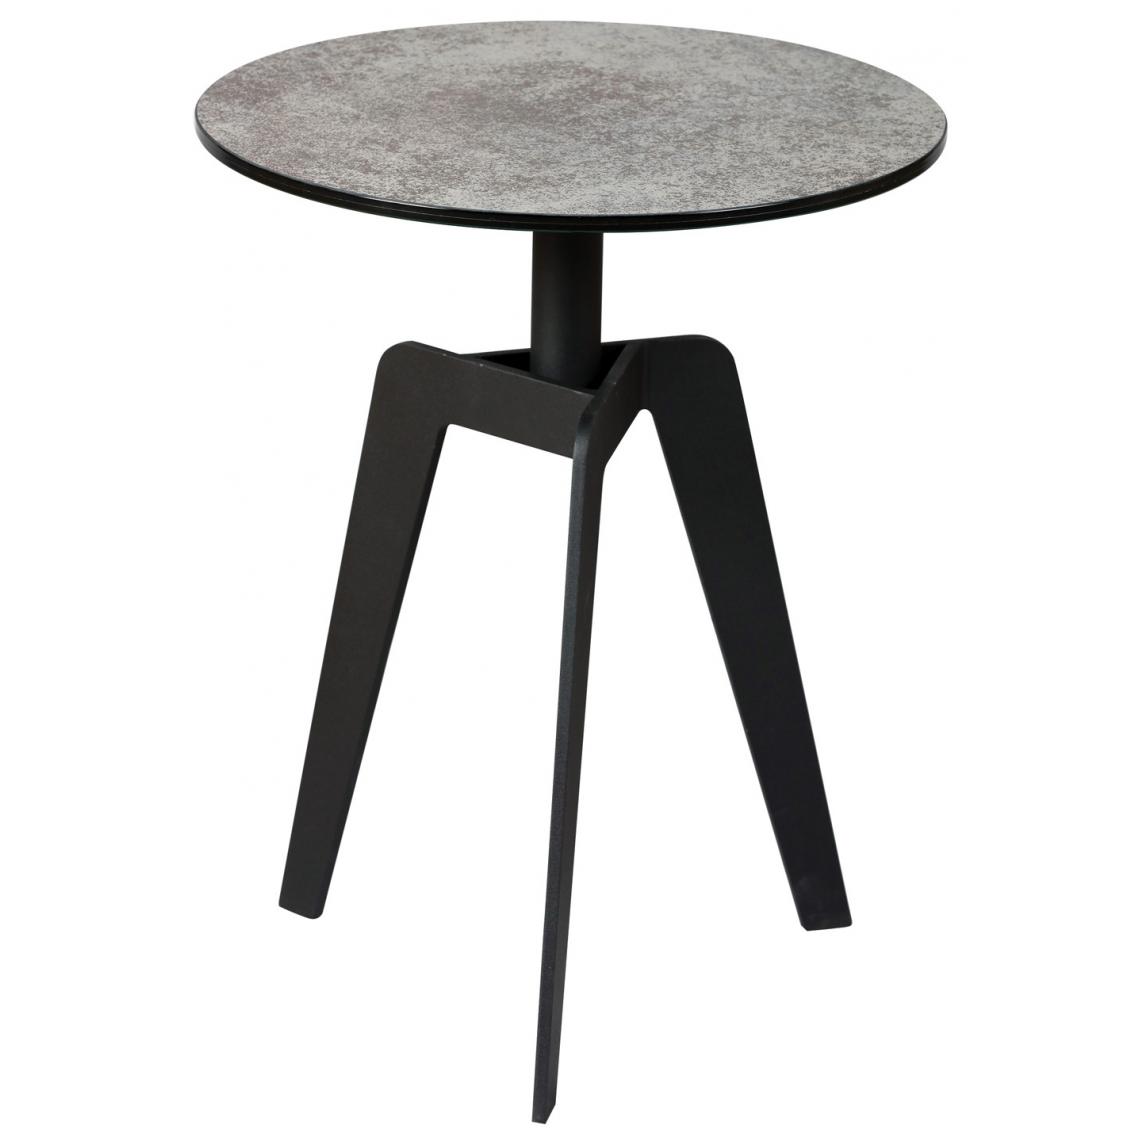 Pegane - Table basse en acier gris anthracite mat (démontée) - Dim : Ø.40 x Ht.50 cm - Tables basses